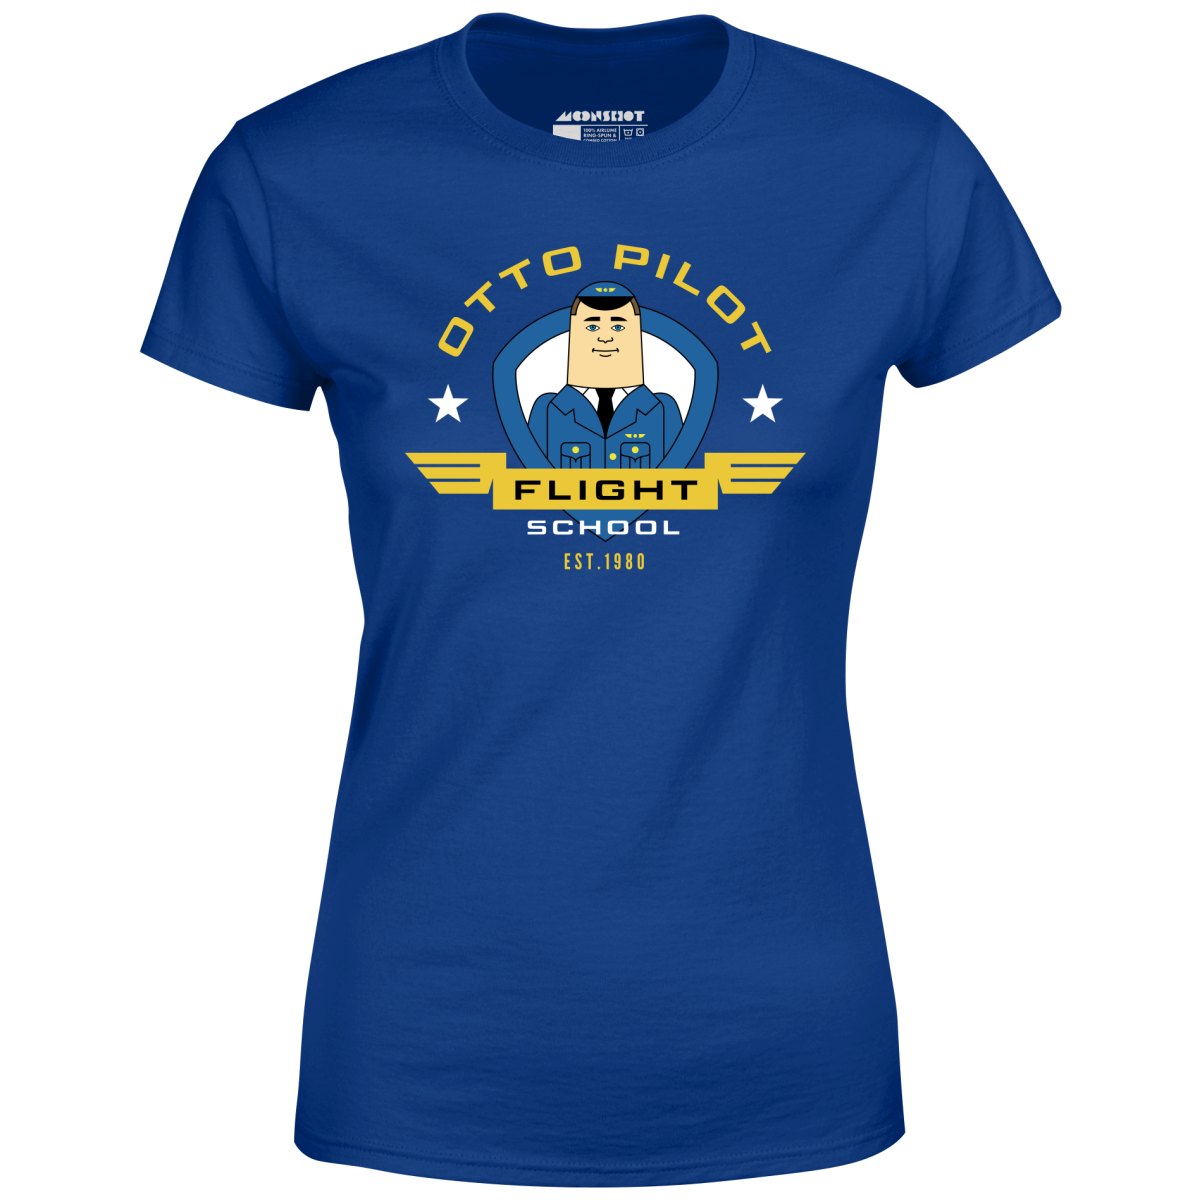 Otto Pilot Flight School - Women's T-Shirt